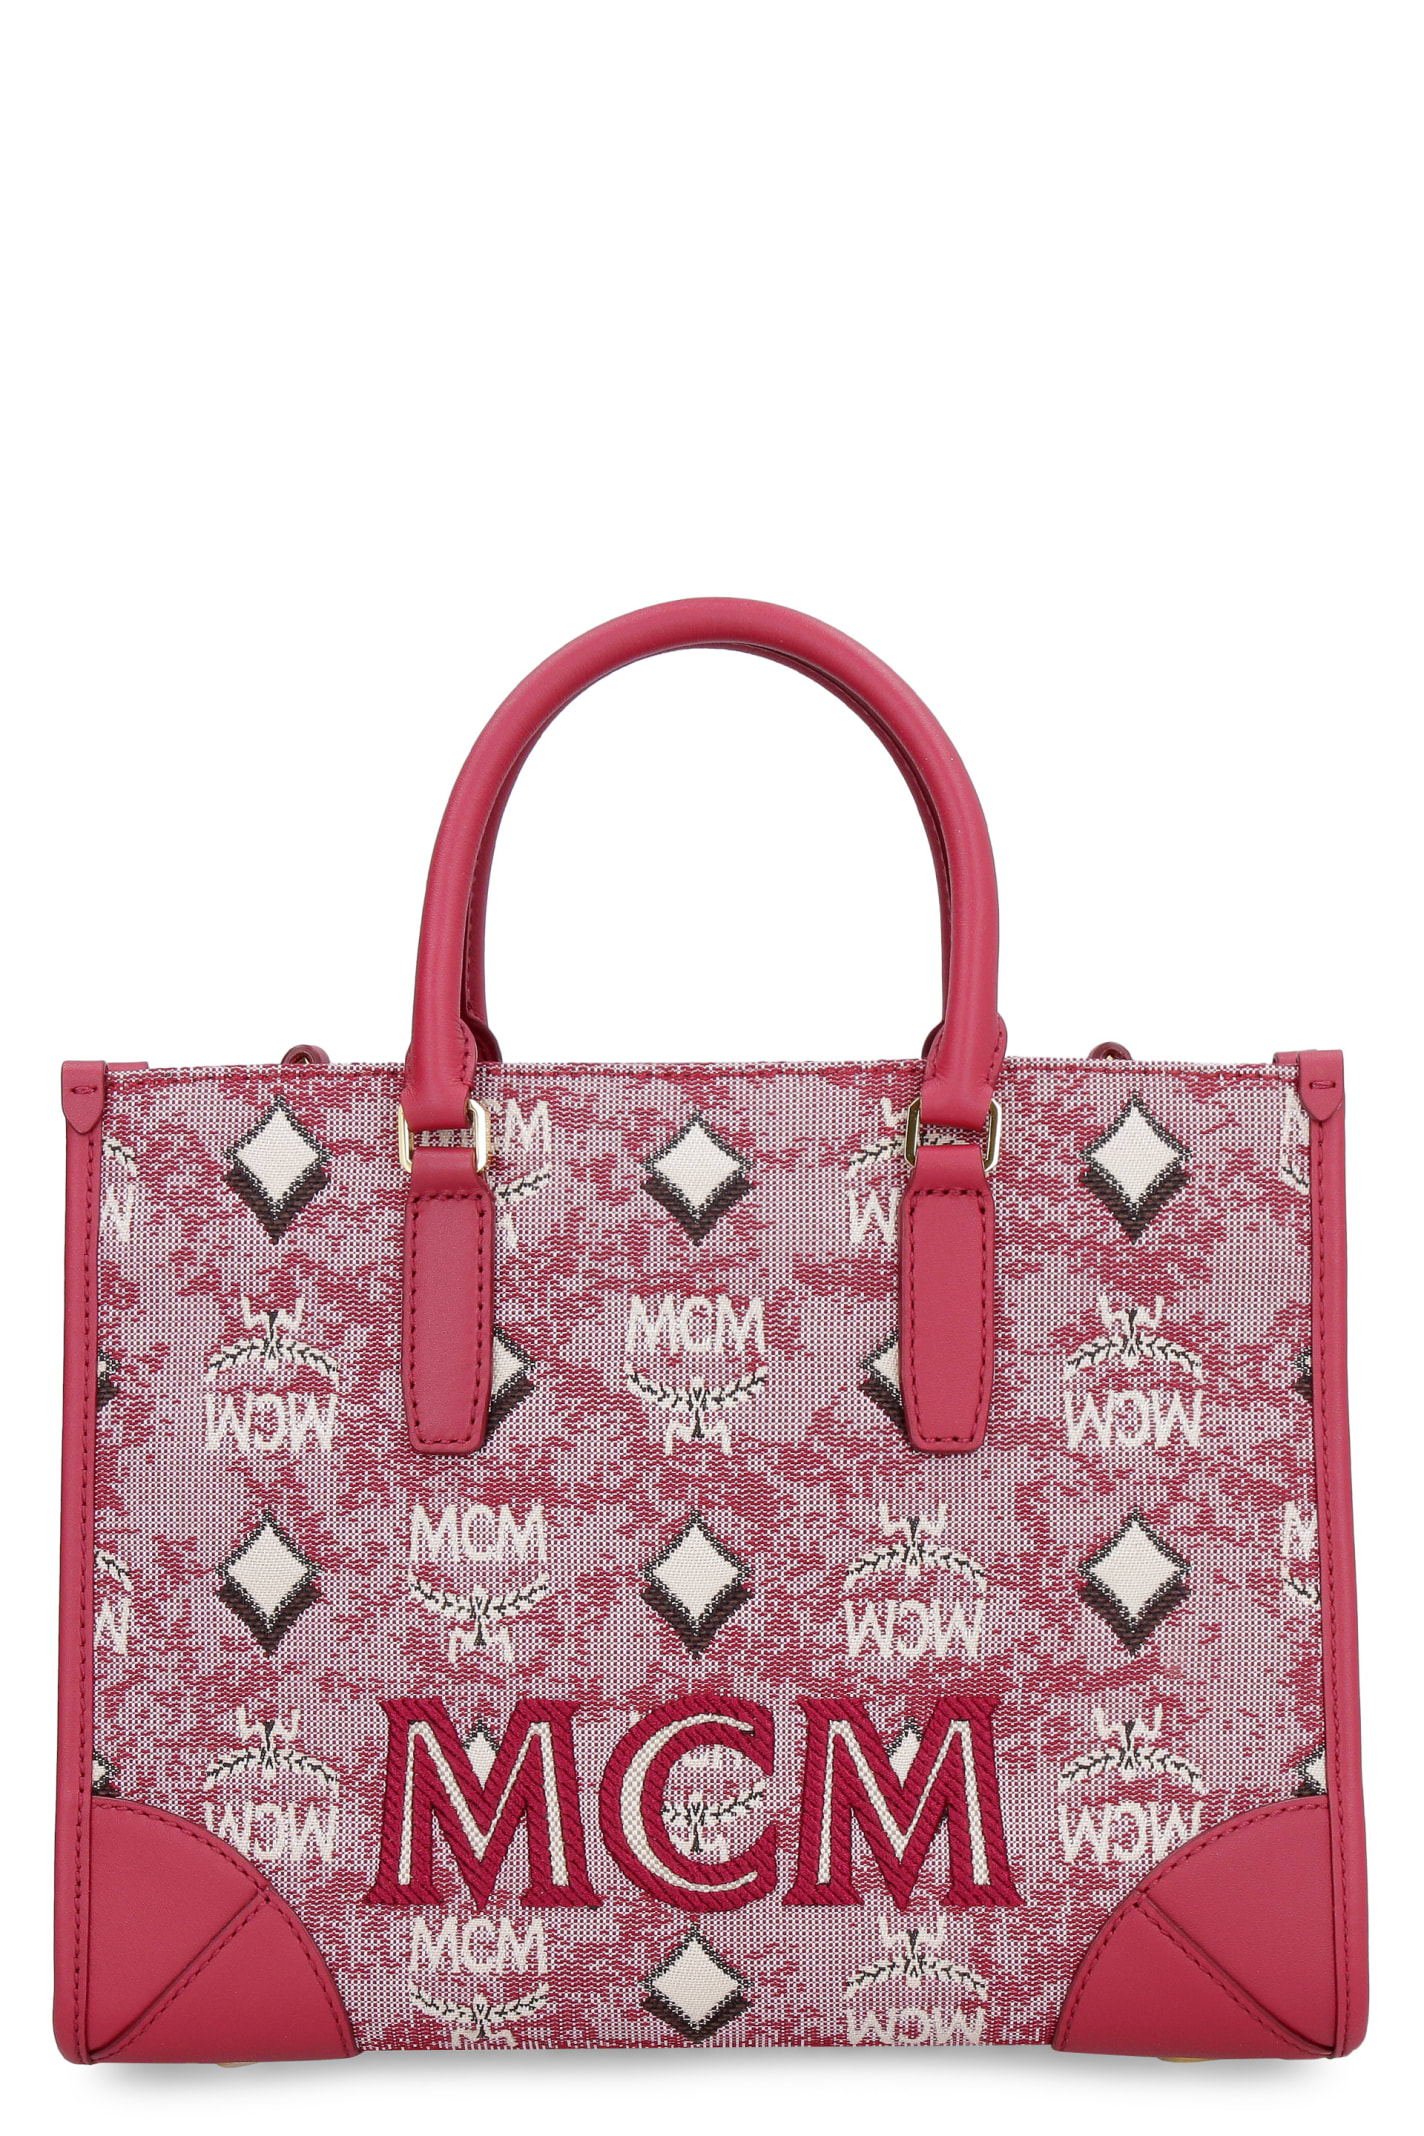 MCM Canvas Handbag